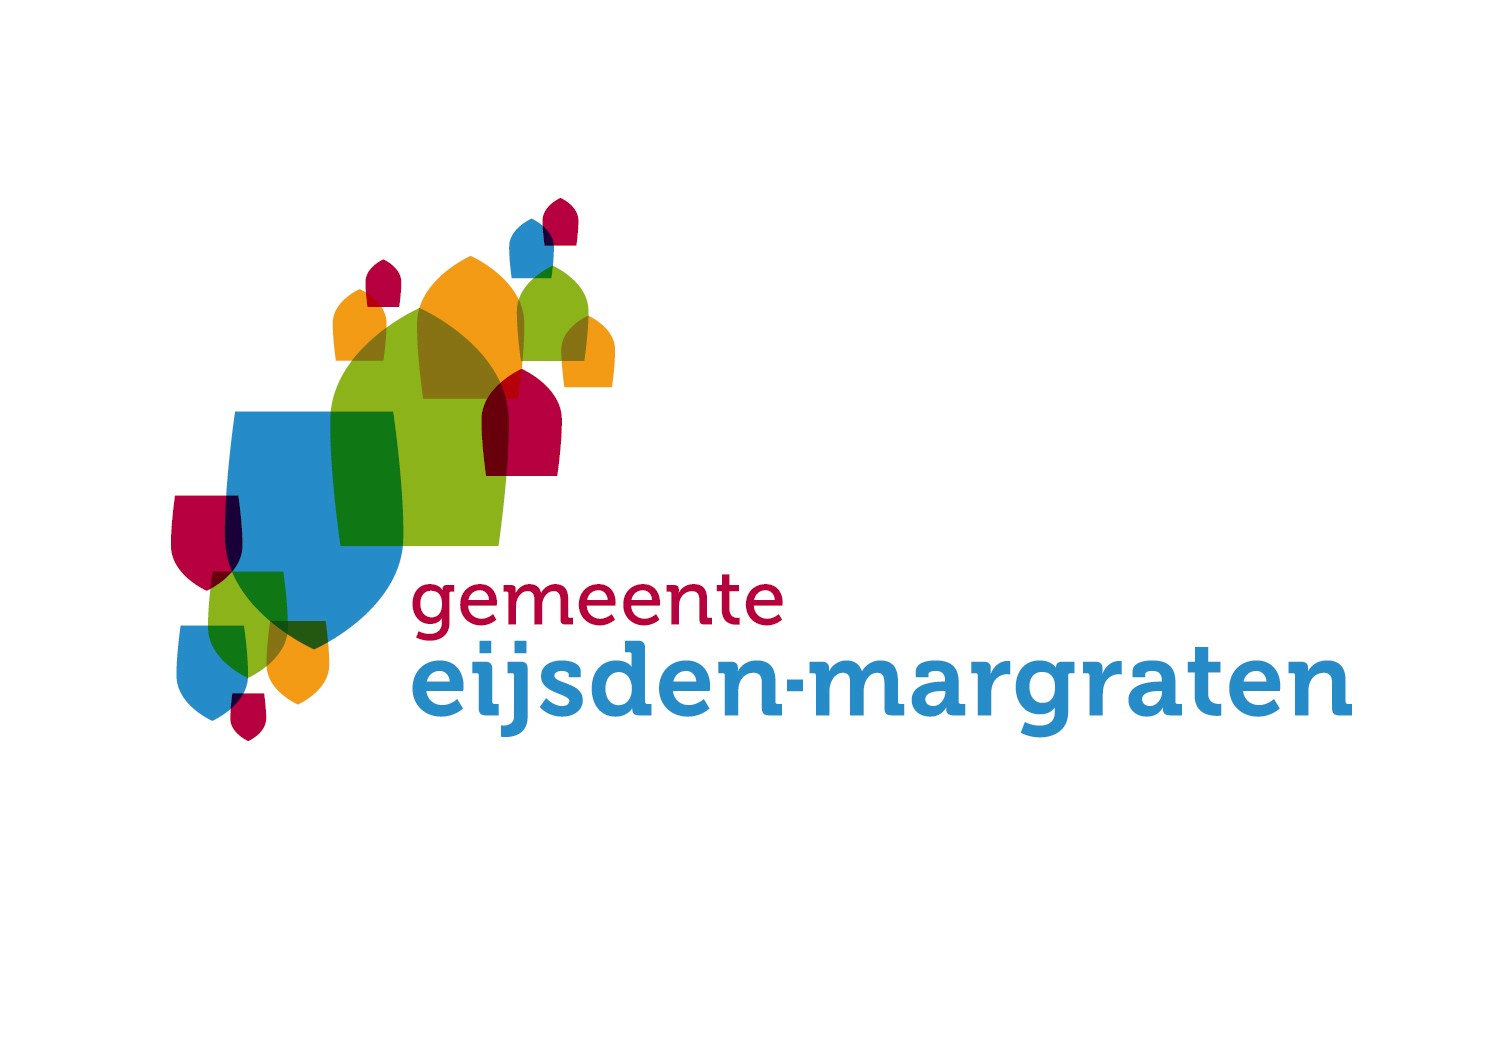 Logo gemeente Eijsden-Margraten, de schildjes in vier kleuren rood, groen, oranje, blauw staan voor de kernen in de gemeente